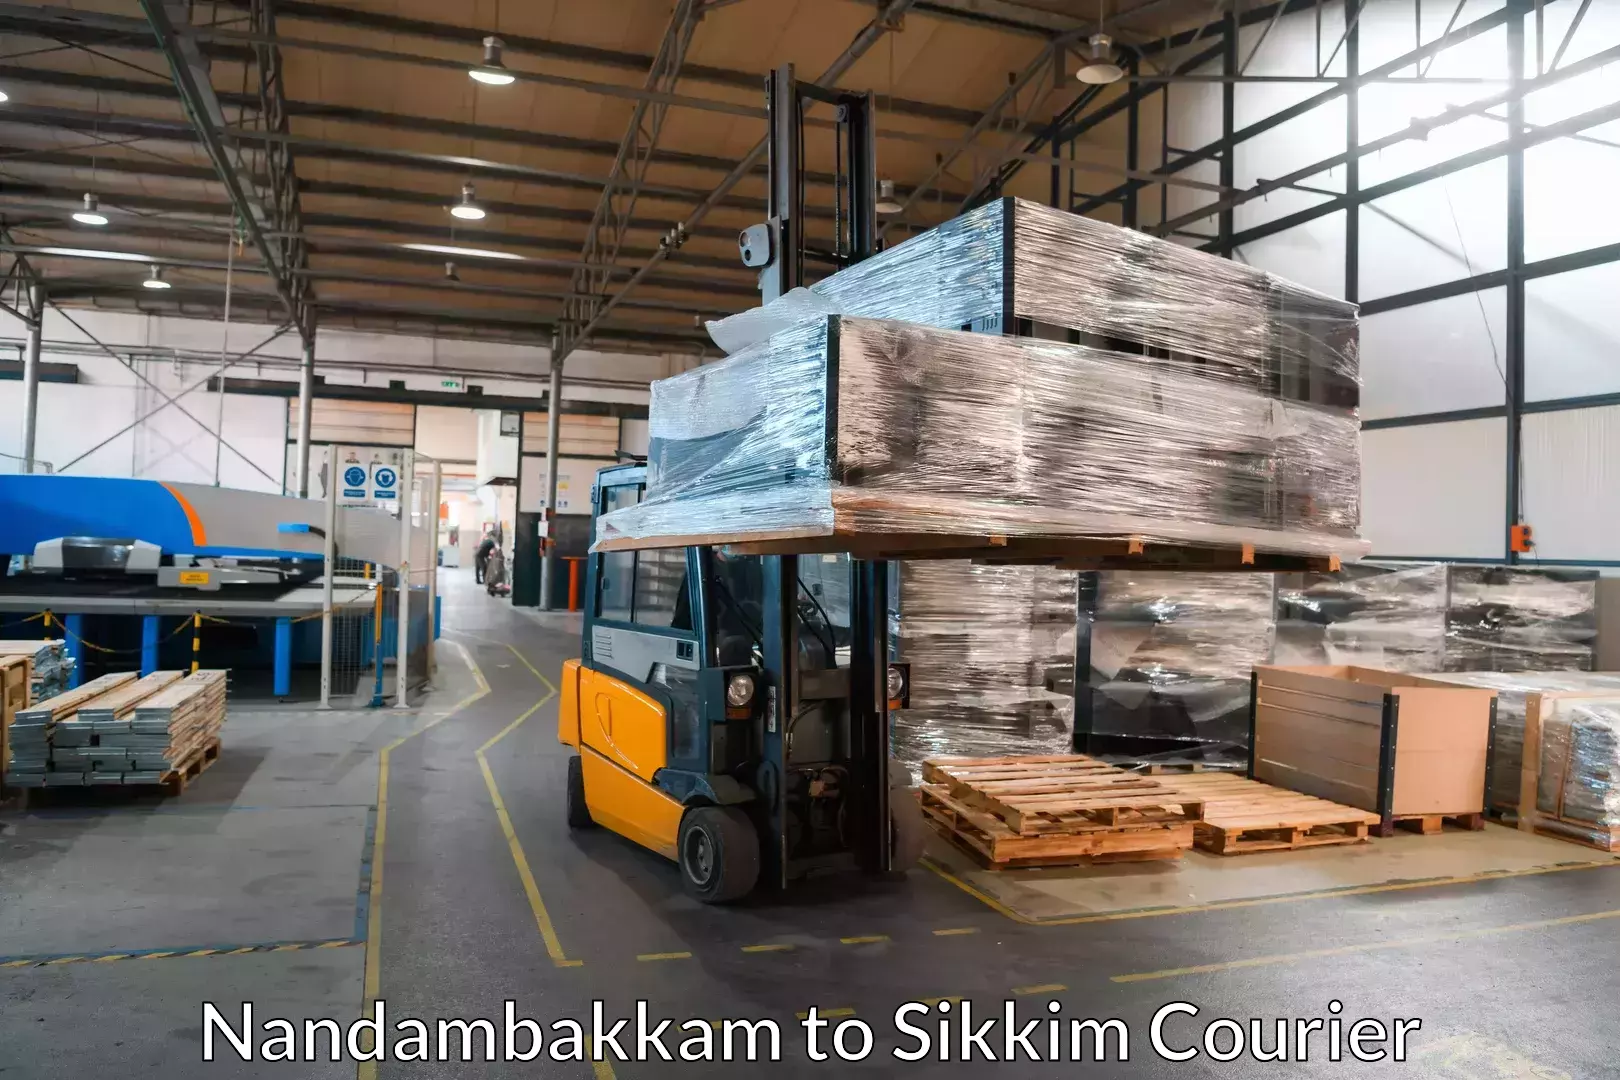 Seamless moving process Nandambakkam to North Sikkim